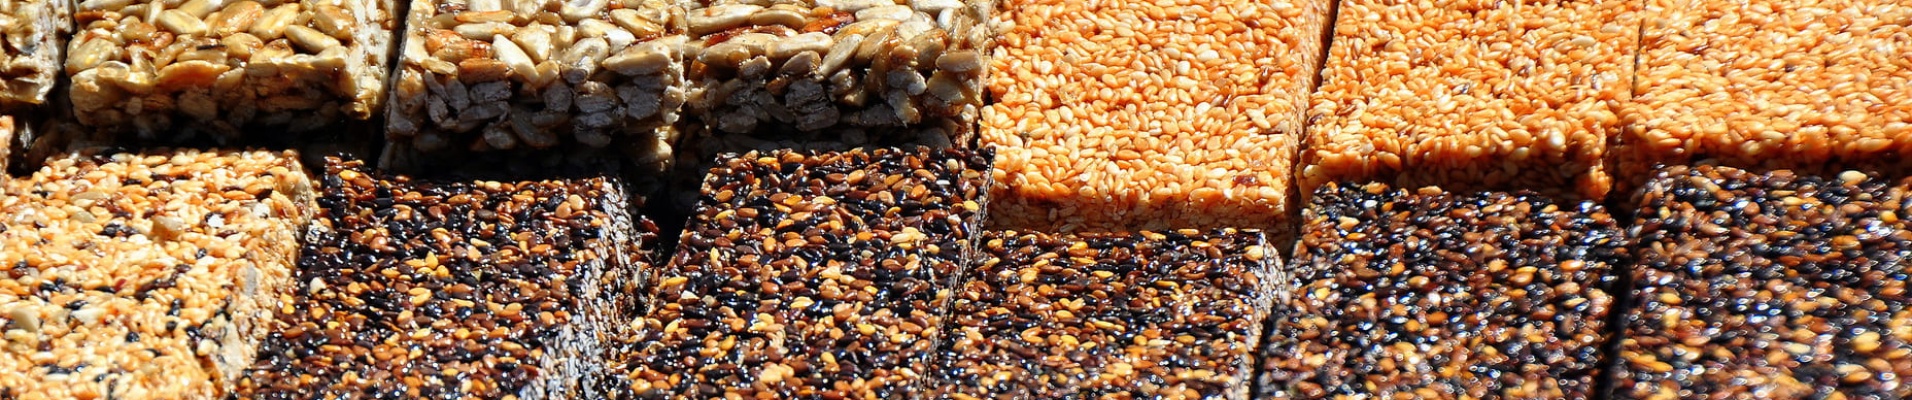 Barre de céréales vendues au Bazar, Tachkent